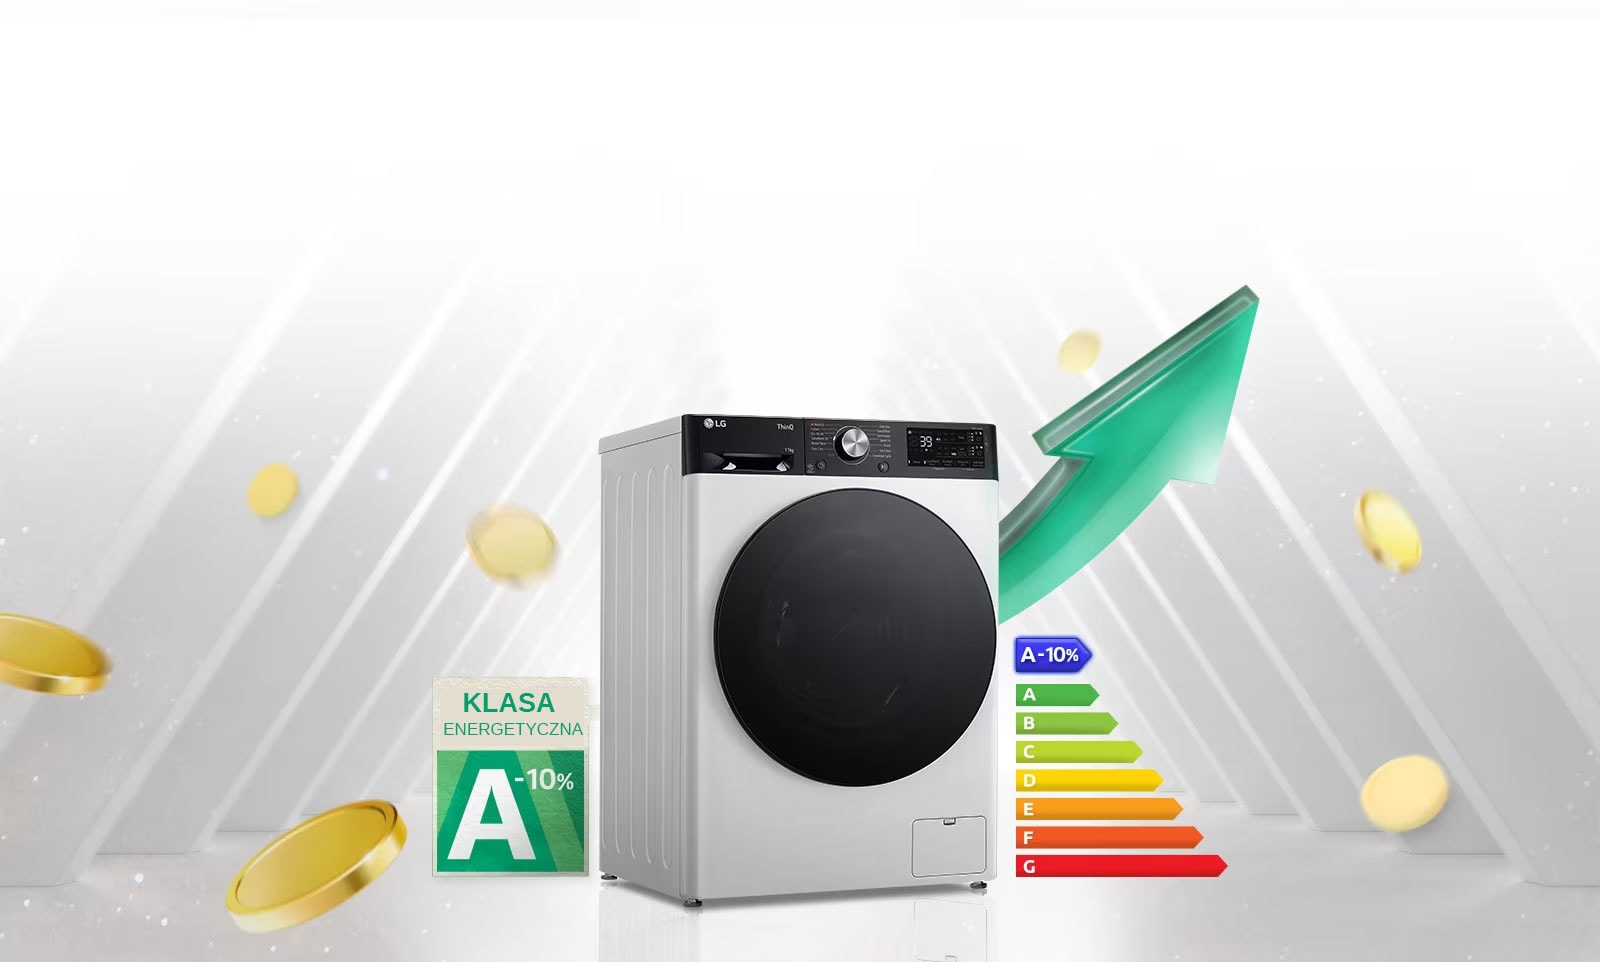 „Etykieta energetyczna A-10% jest umieszczona obok pralki.